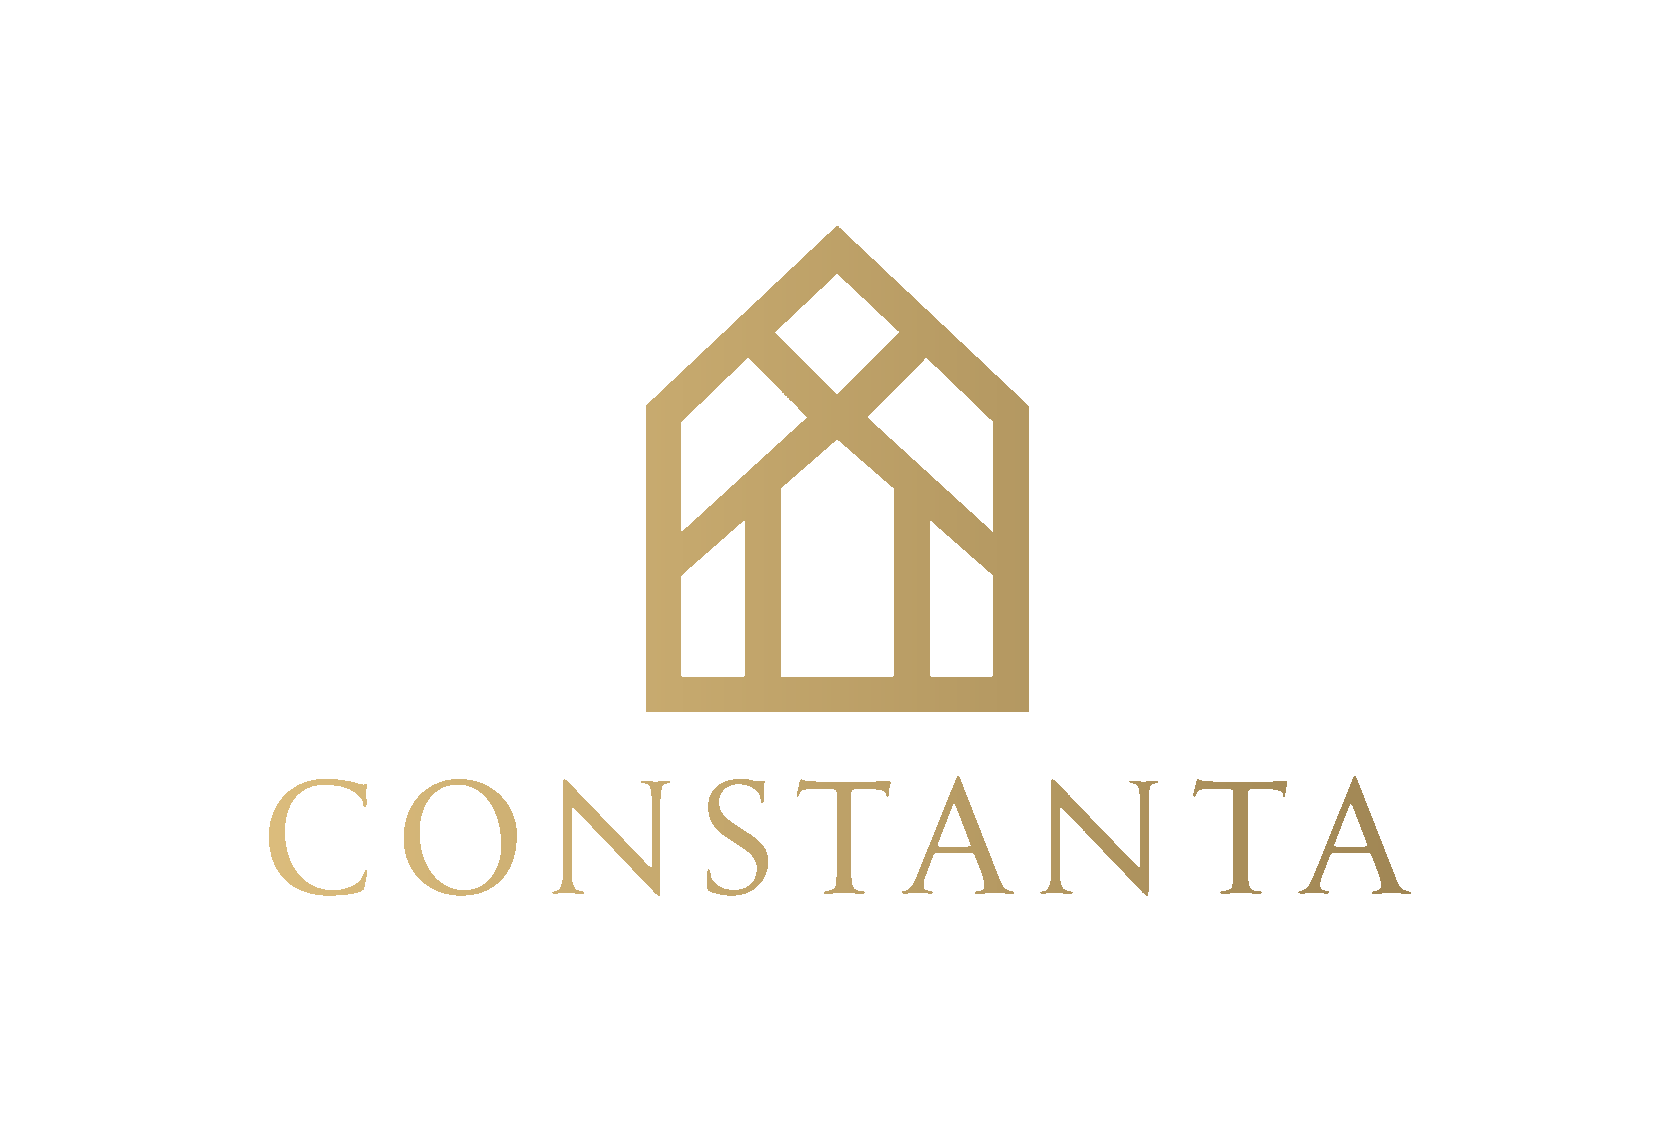  Constanta - лофт перегородки на заказ 